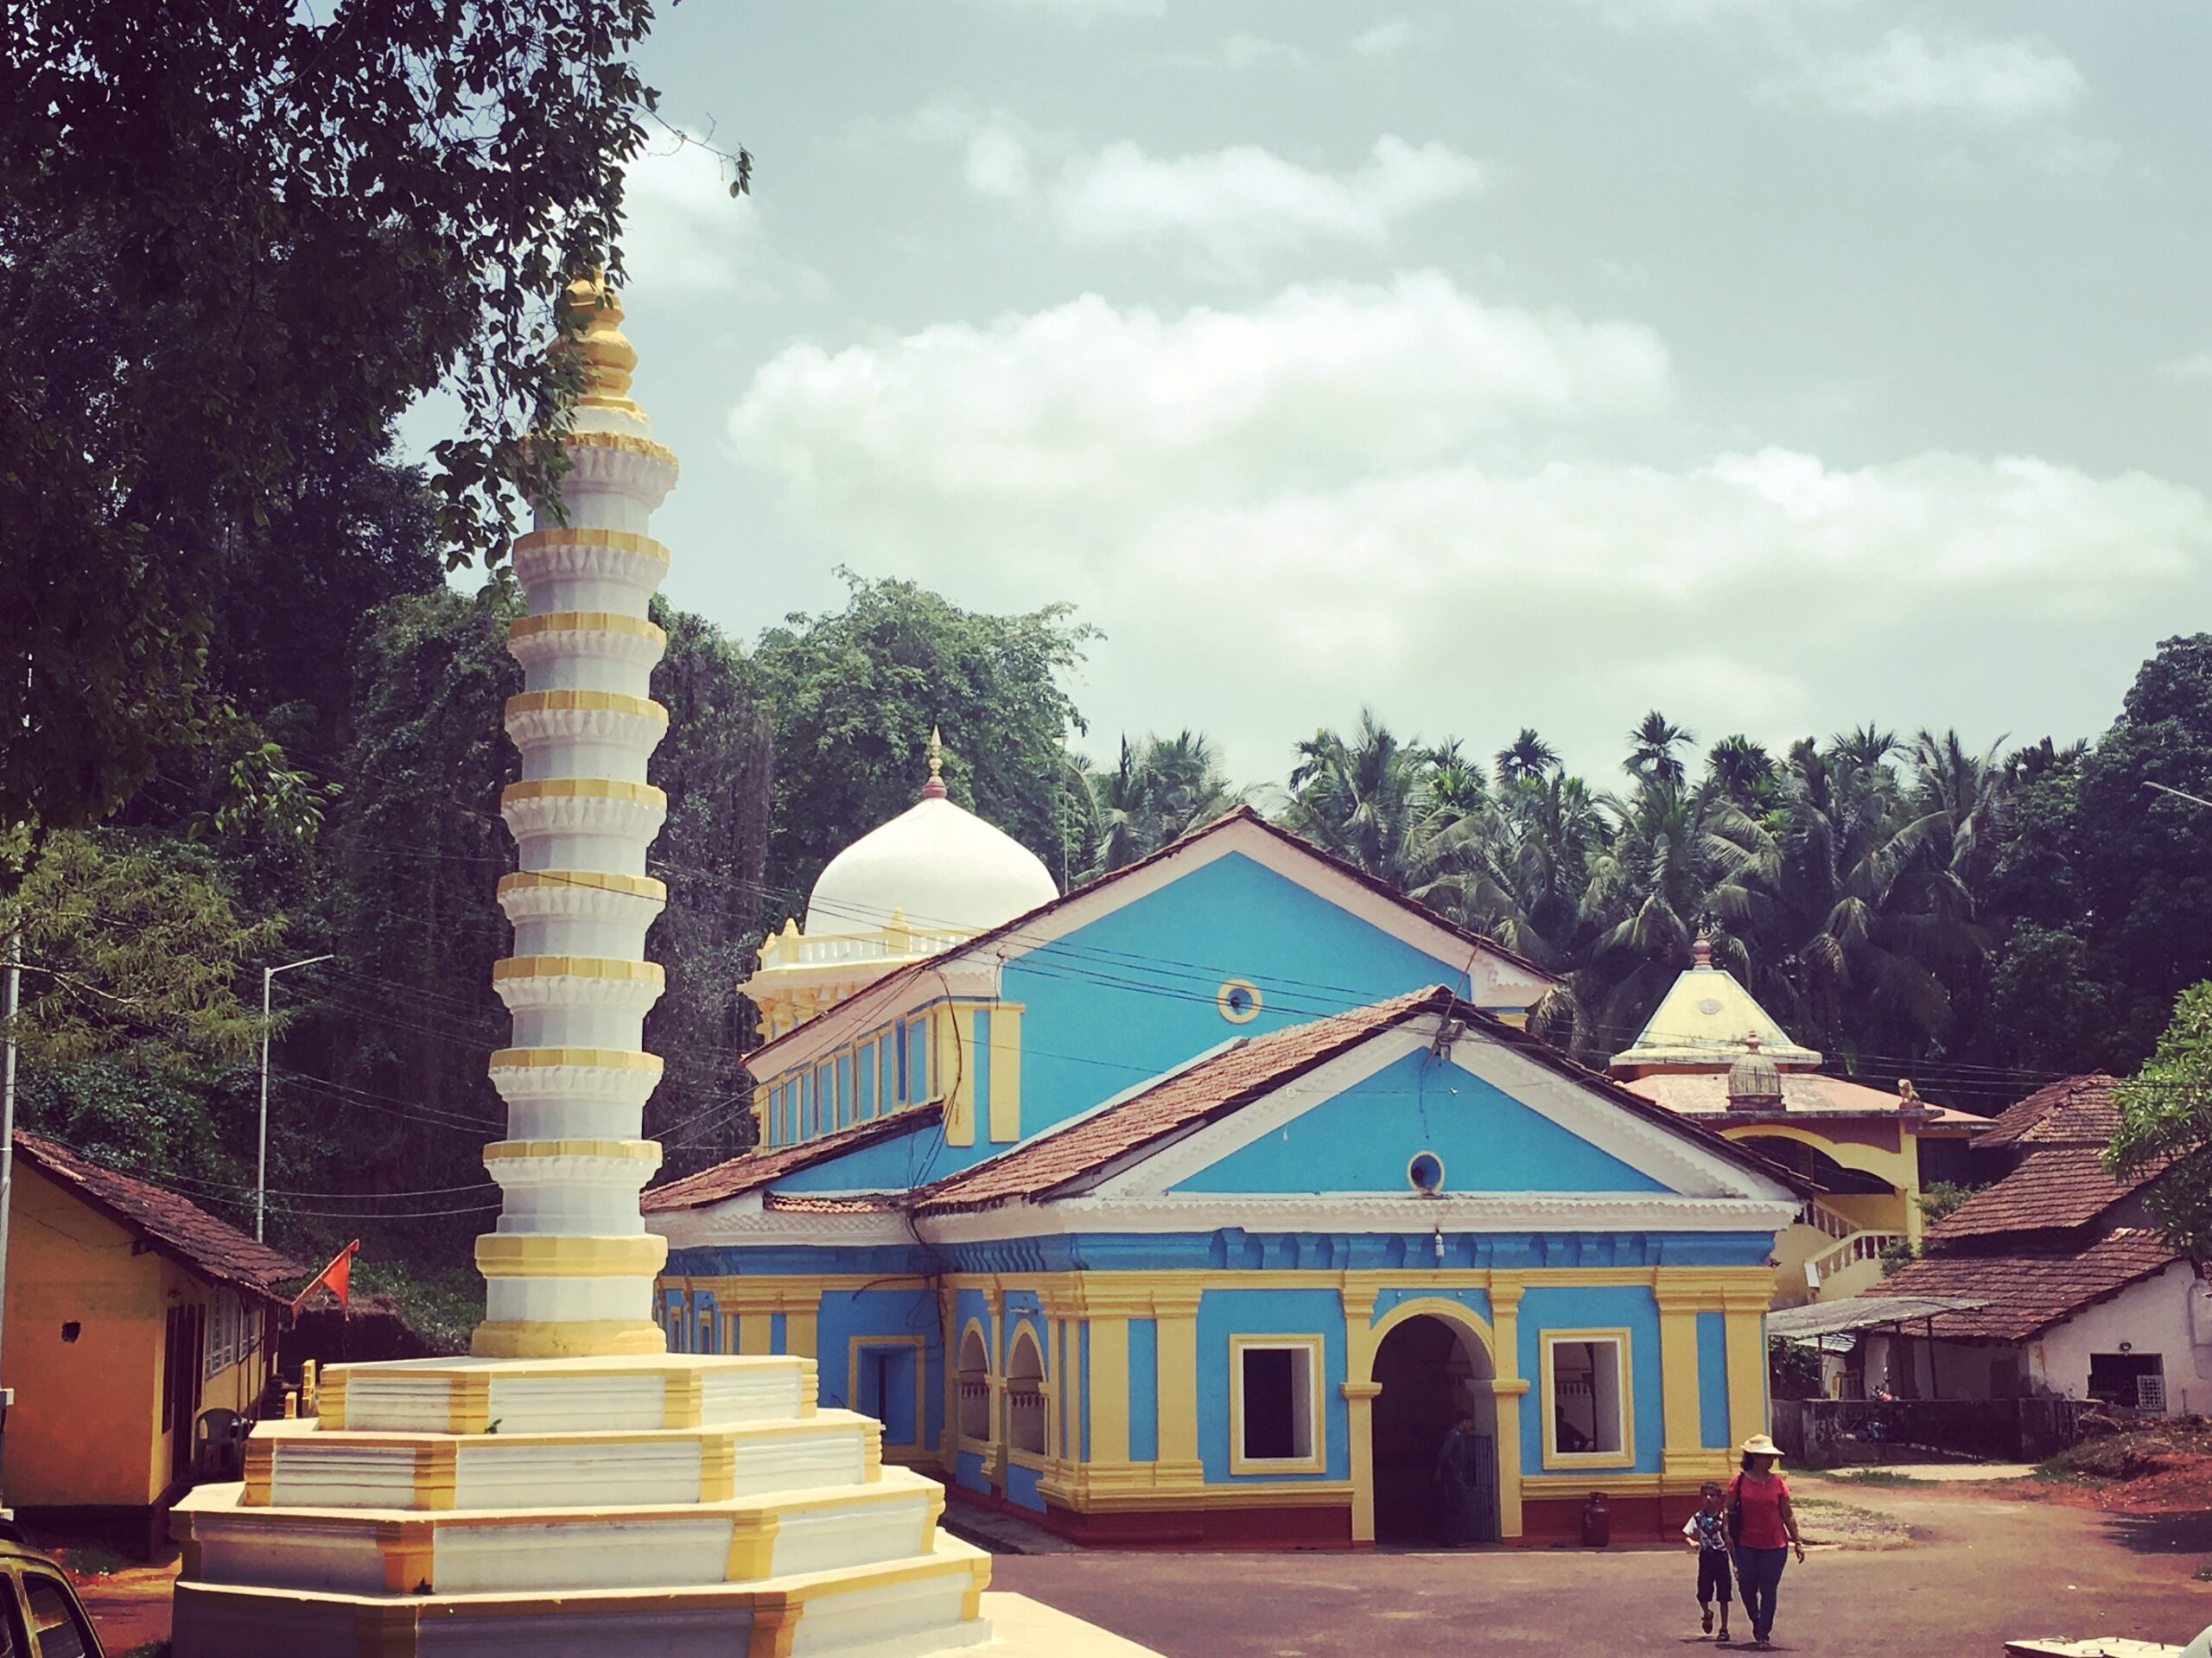 நர்வே ஸ்ரீ சப்தகோட்டீஸ்வர் கோவில் – கோவா